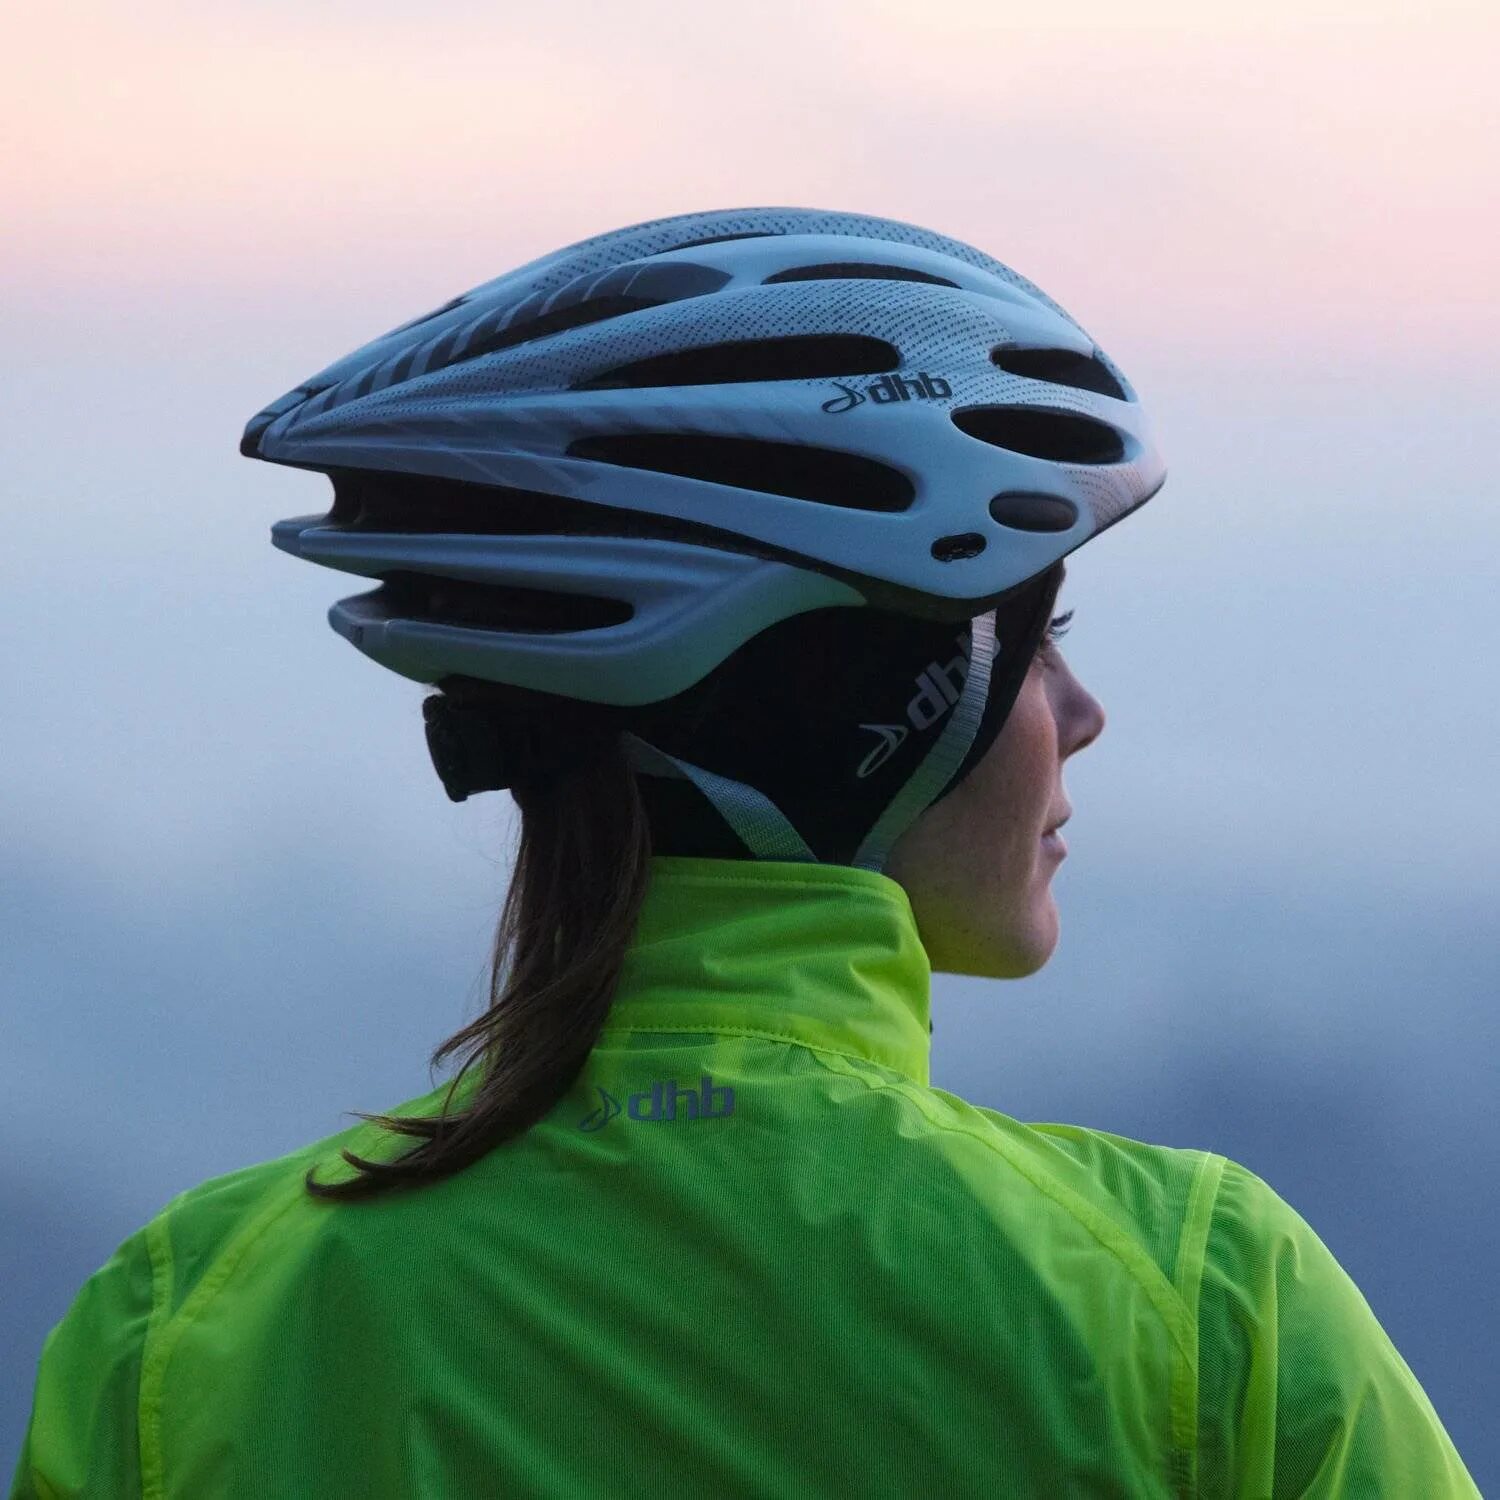 Шлем для велосипеда взрослый. Шлем dhb (шоссейный). Шлем Canyon велосипедный. Шлем Mace велосипедный. Велосипедист в шлеме.